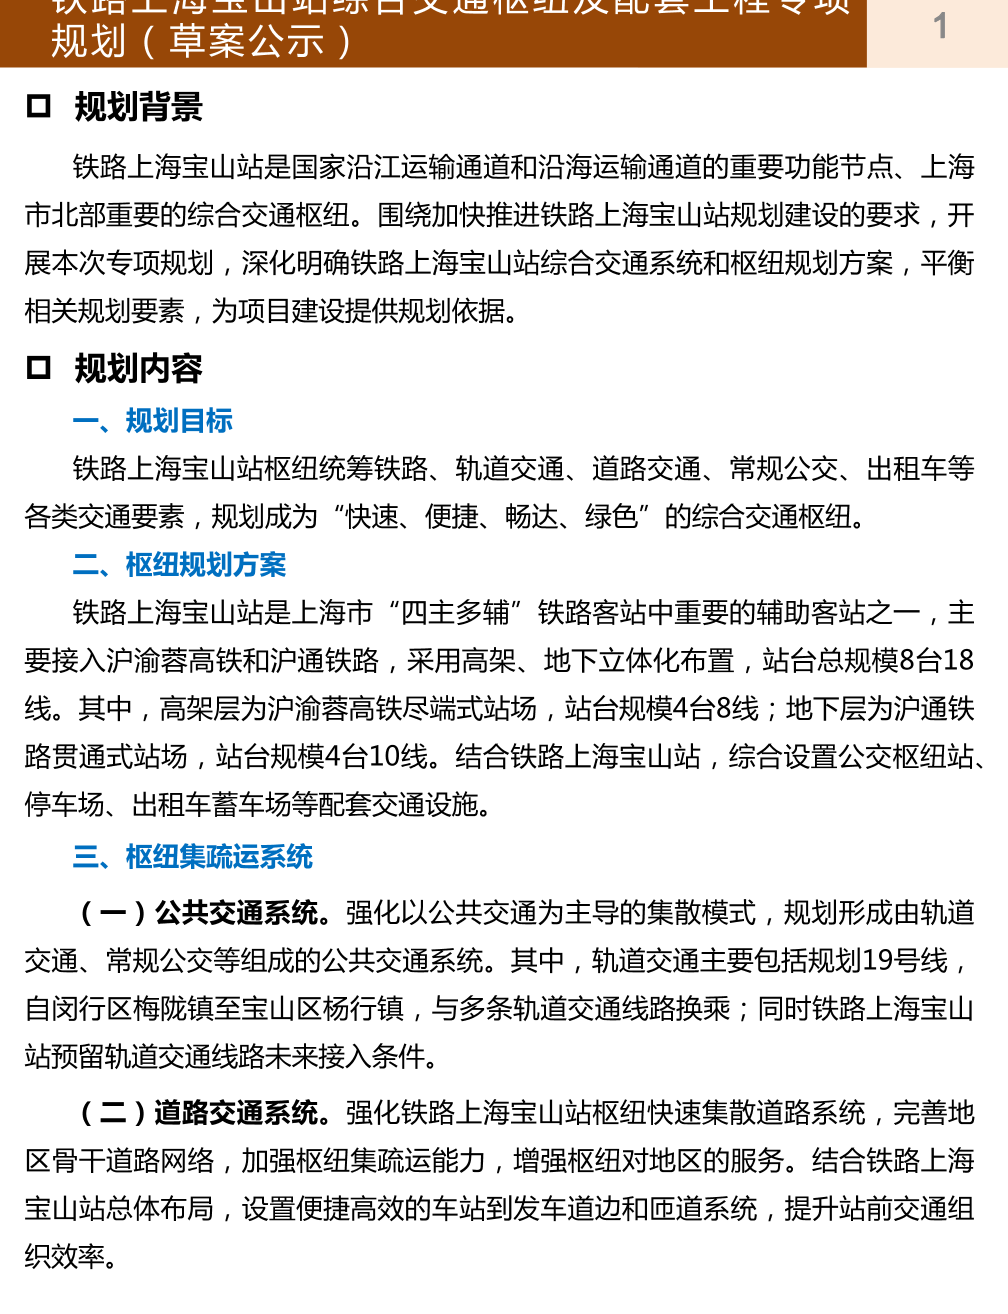 铁路上海宝山站综合交通枢纽及配套工程专项规划（草案公示）.pdf